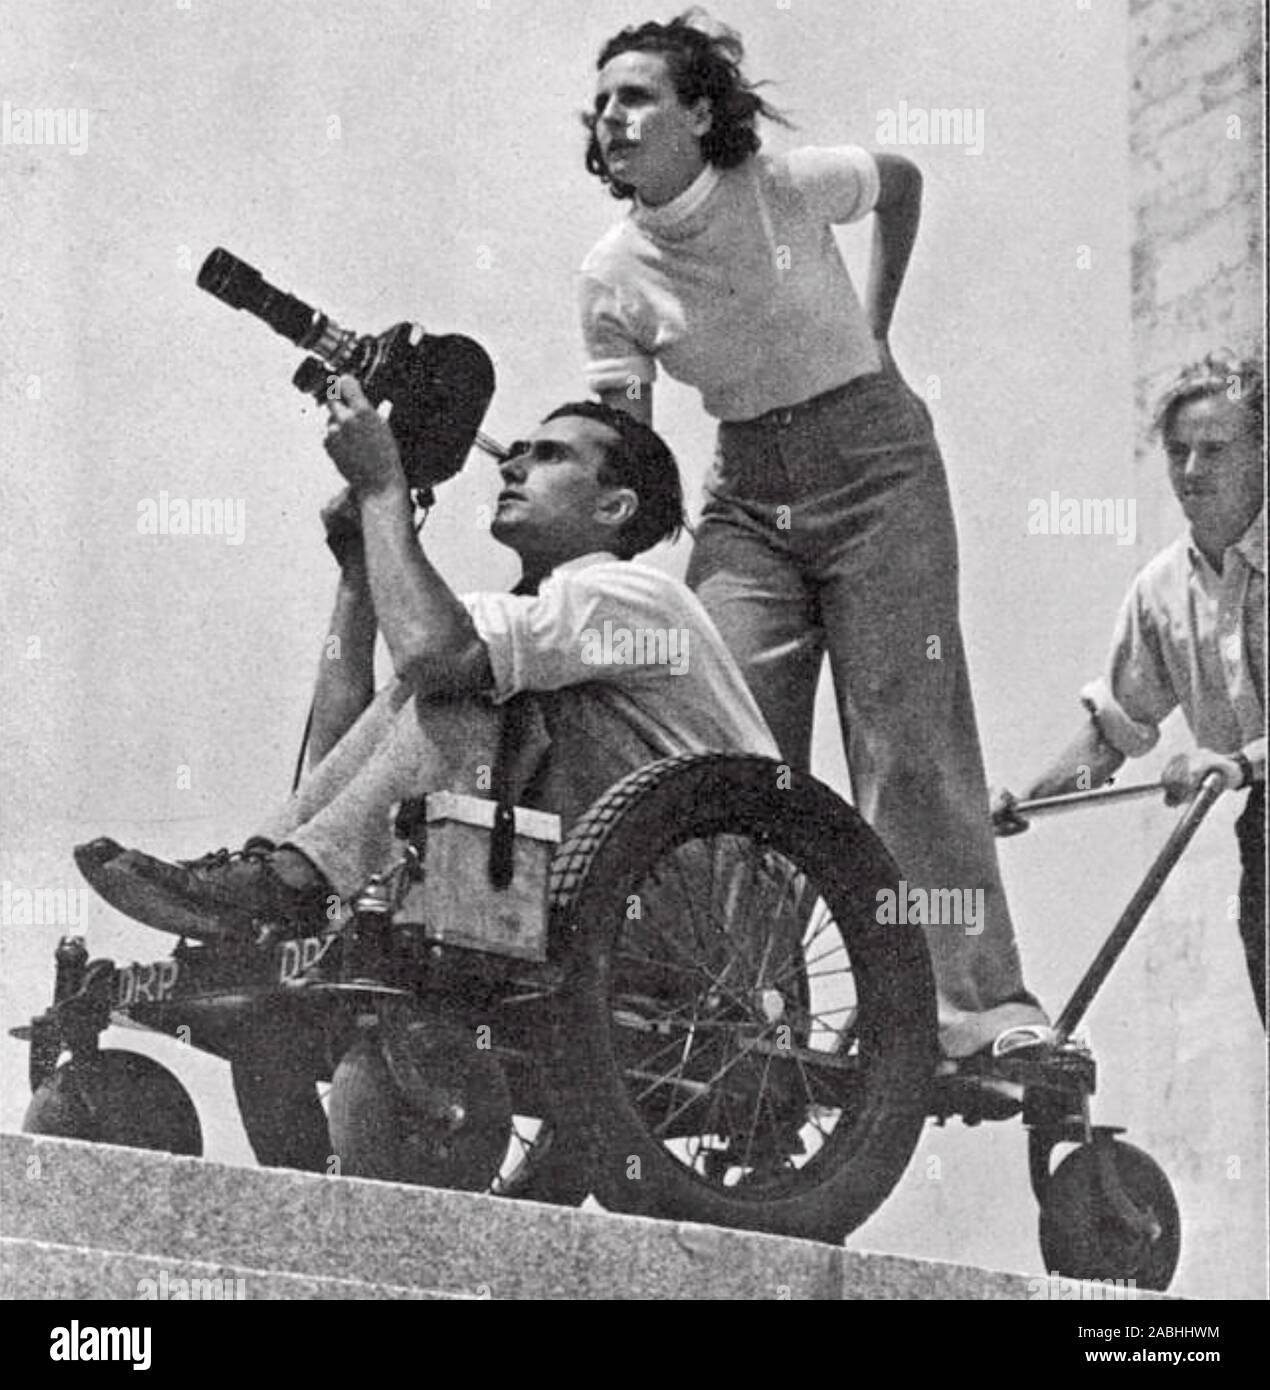 LENI RIEFENSTAHL (1902-2003) director de cine alemán supervisar la cobertura de los Juegos Olímpicos de Berlín de 1936 para la película "Olympia" Foto de stock